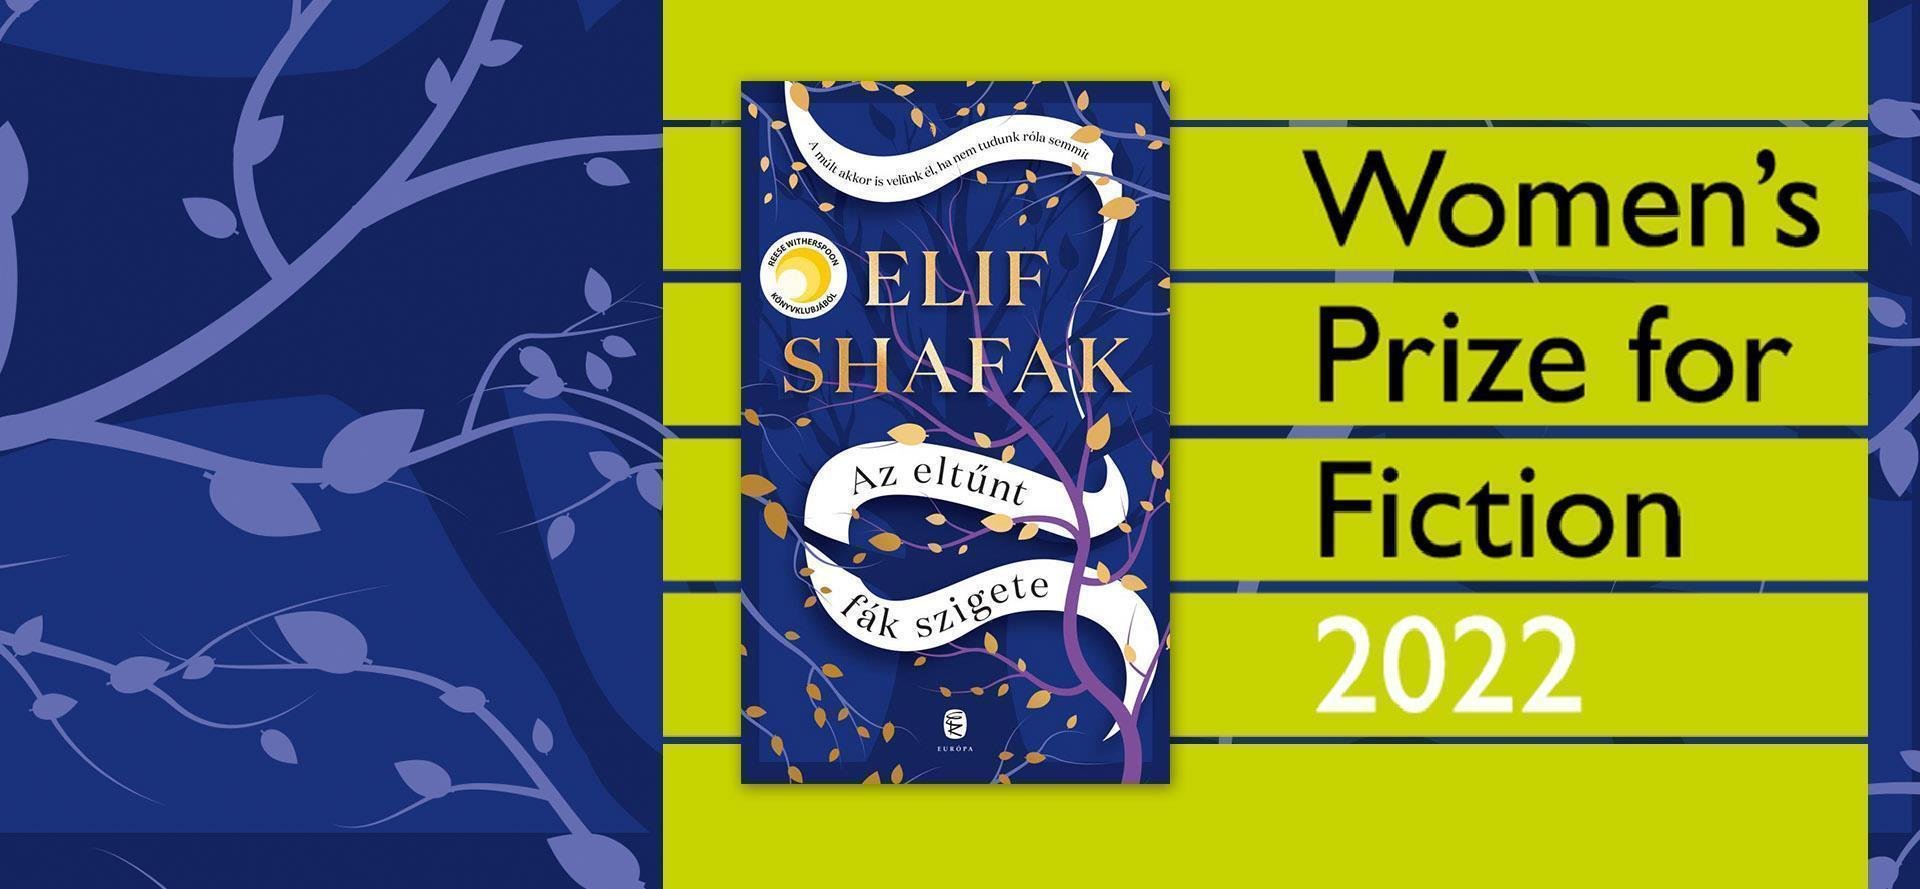 Elif Shafak új könyve, Az elveszett fák szigete is esélyes a Women"s Prize for Fiction díjra!